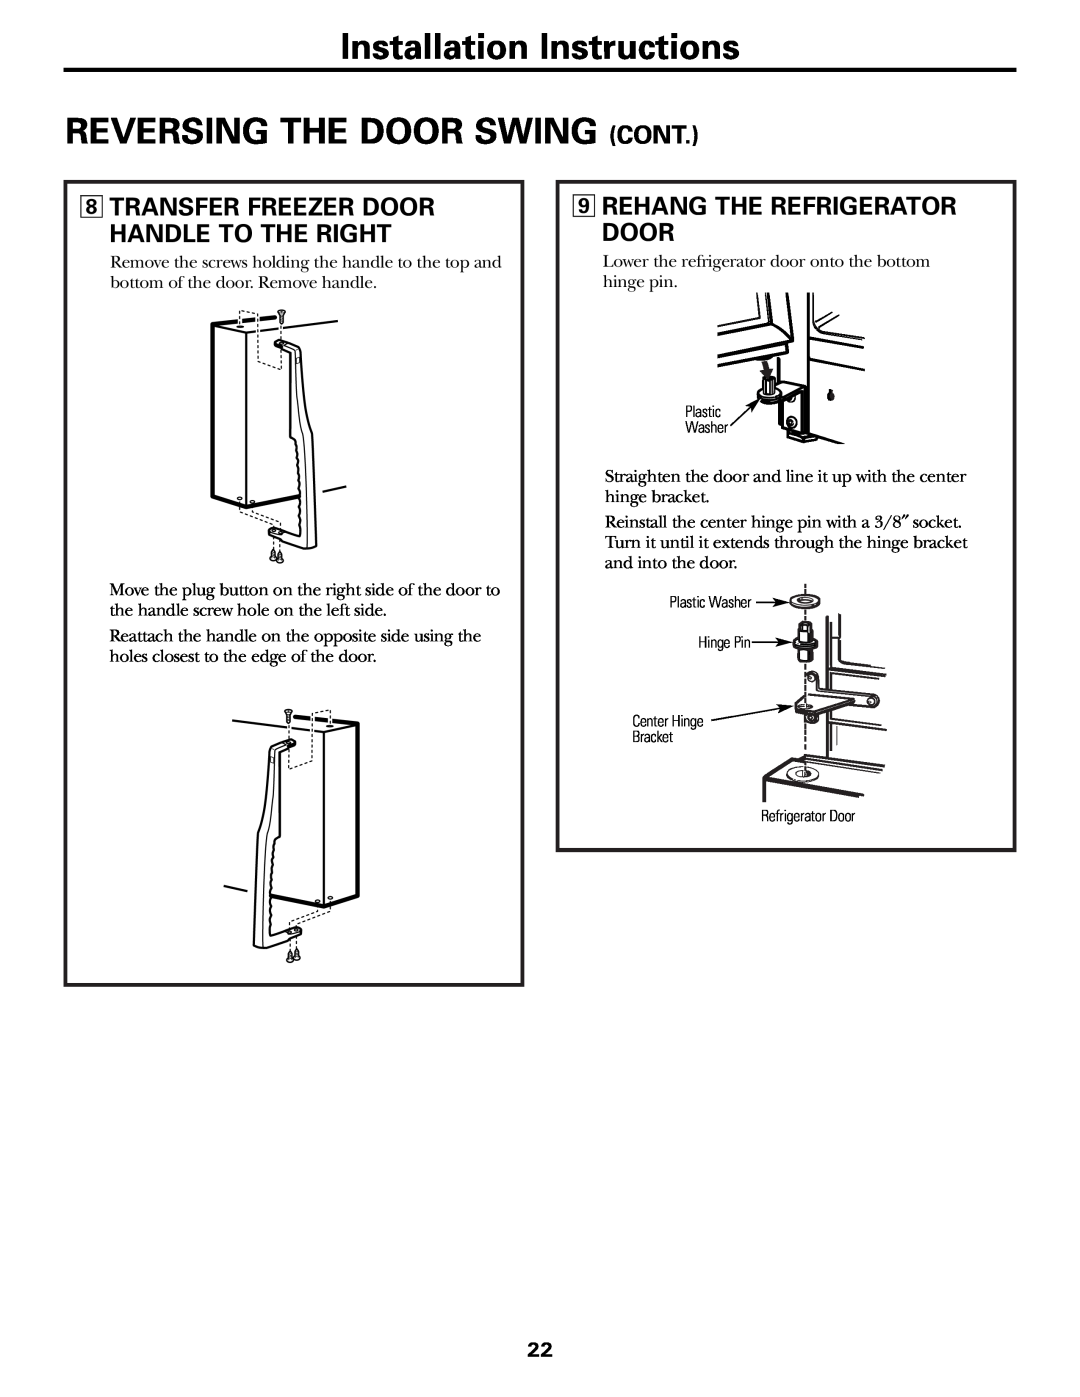 GE 197D3354P003 installation instructions Transfer Freezer Door Handle To The Right, Rehang The Refrigerator Door 